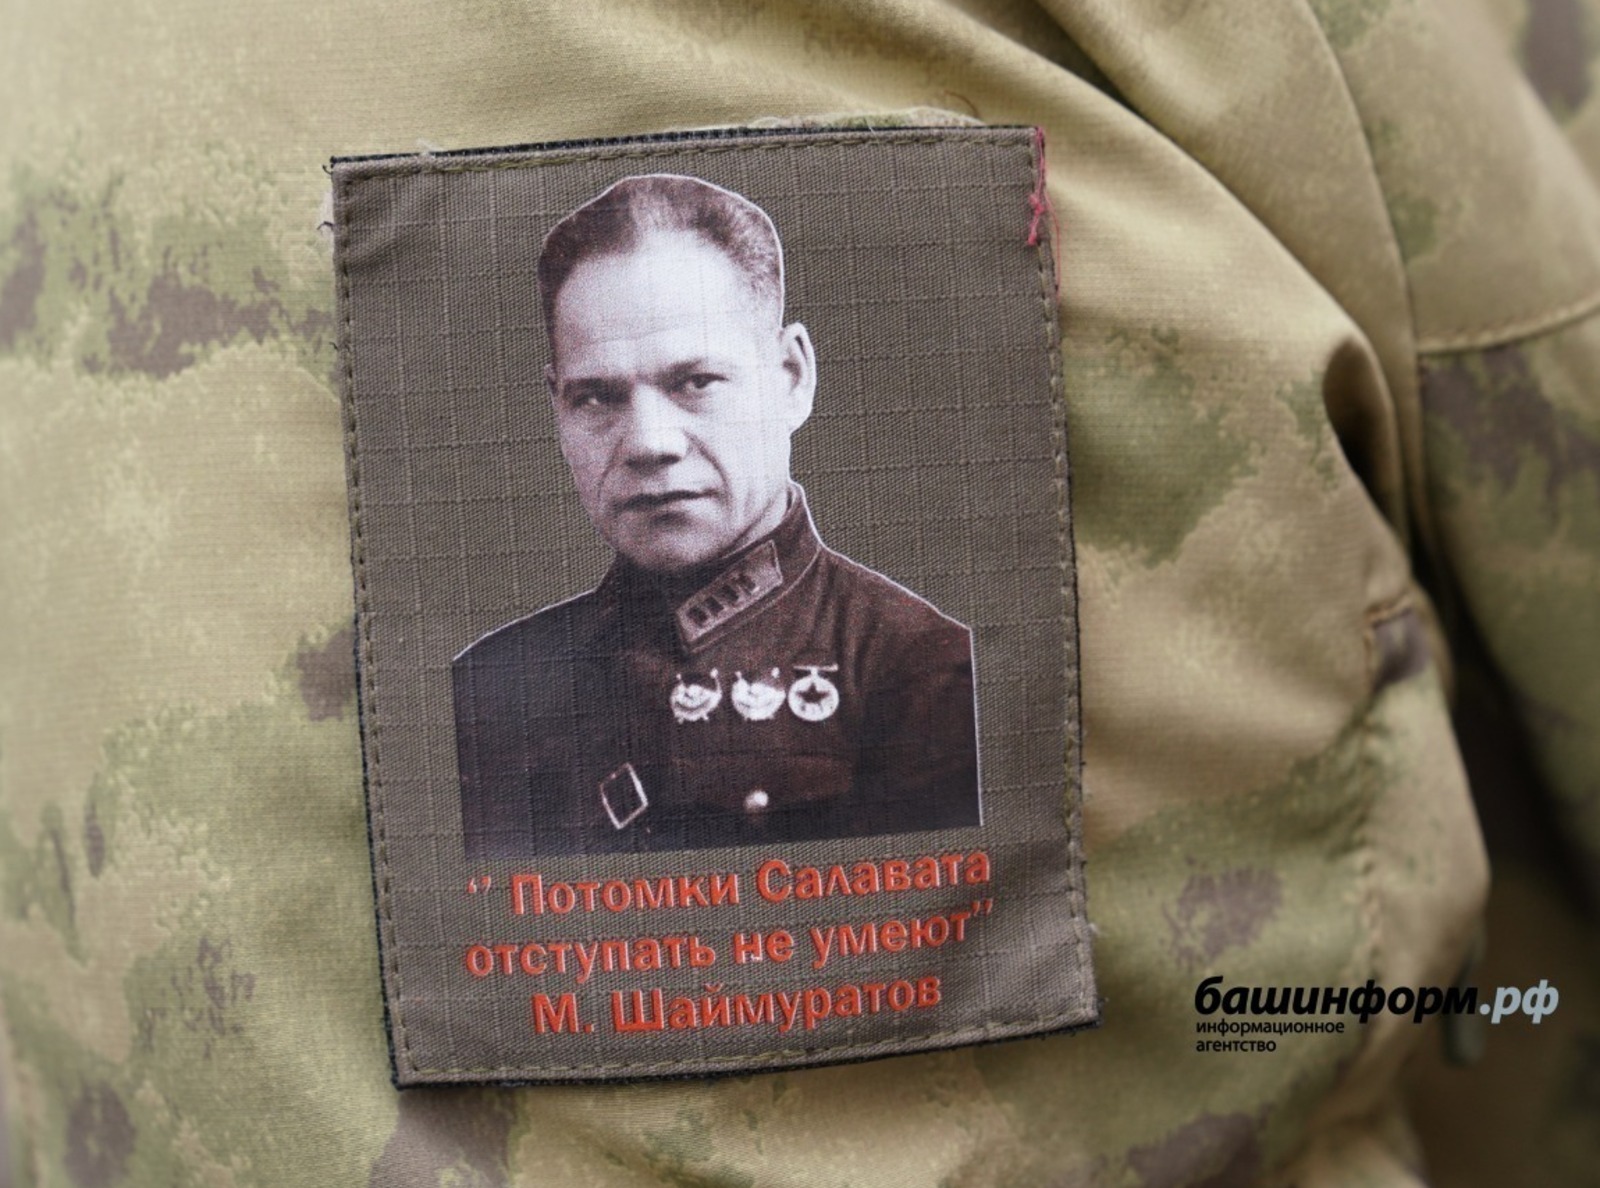 Эксперт считает песню «Шаймуратов-генерал» эмблемой воинов Башкортостана в зоне СВО